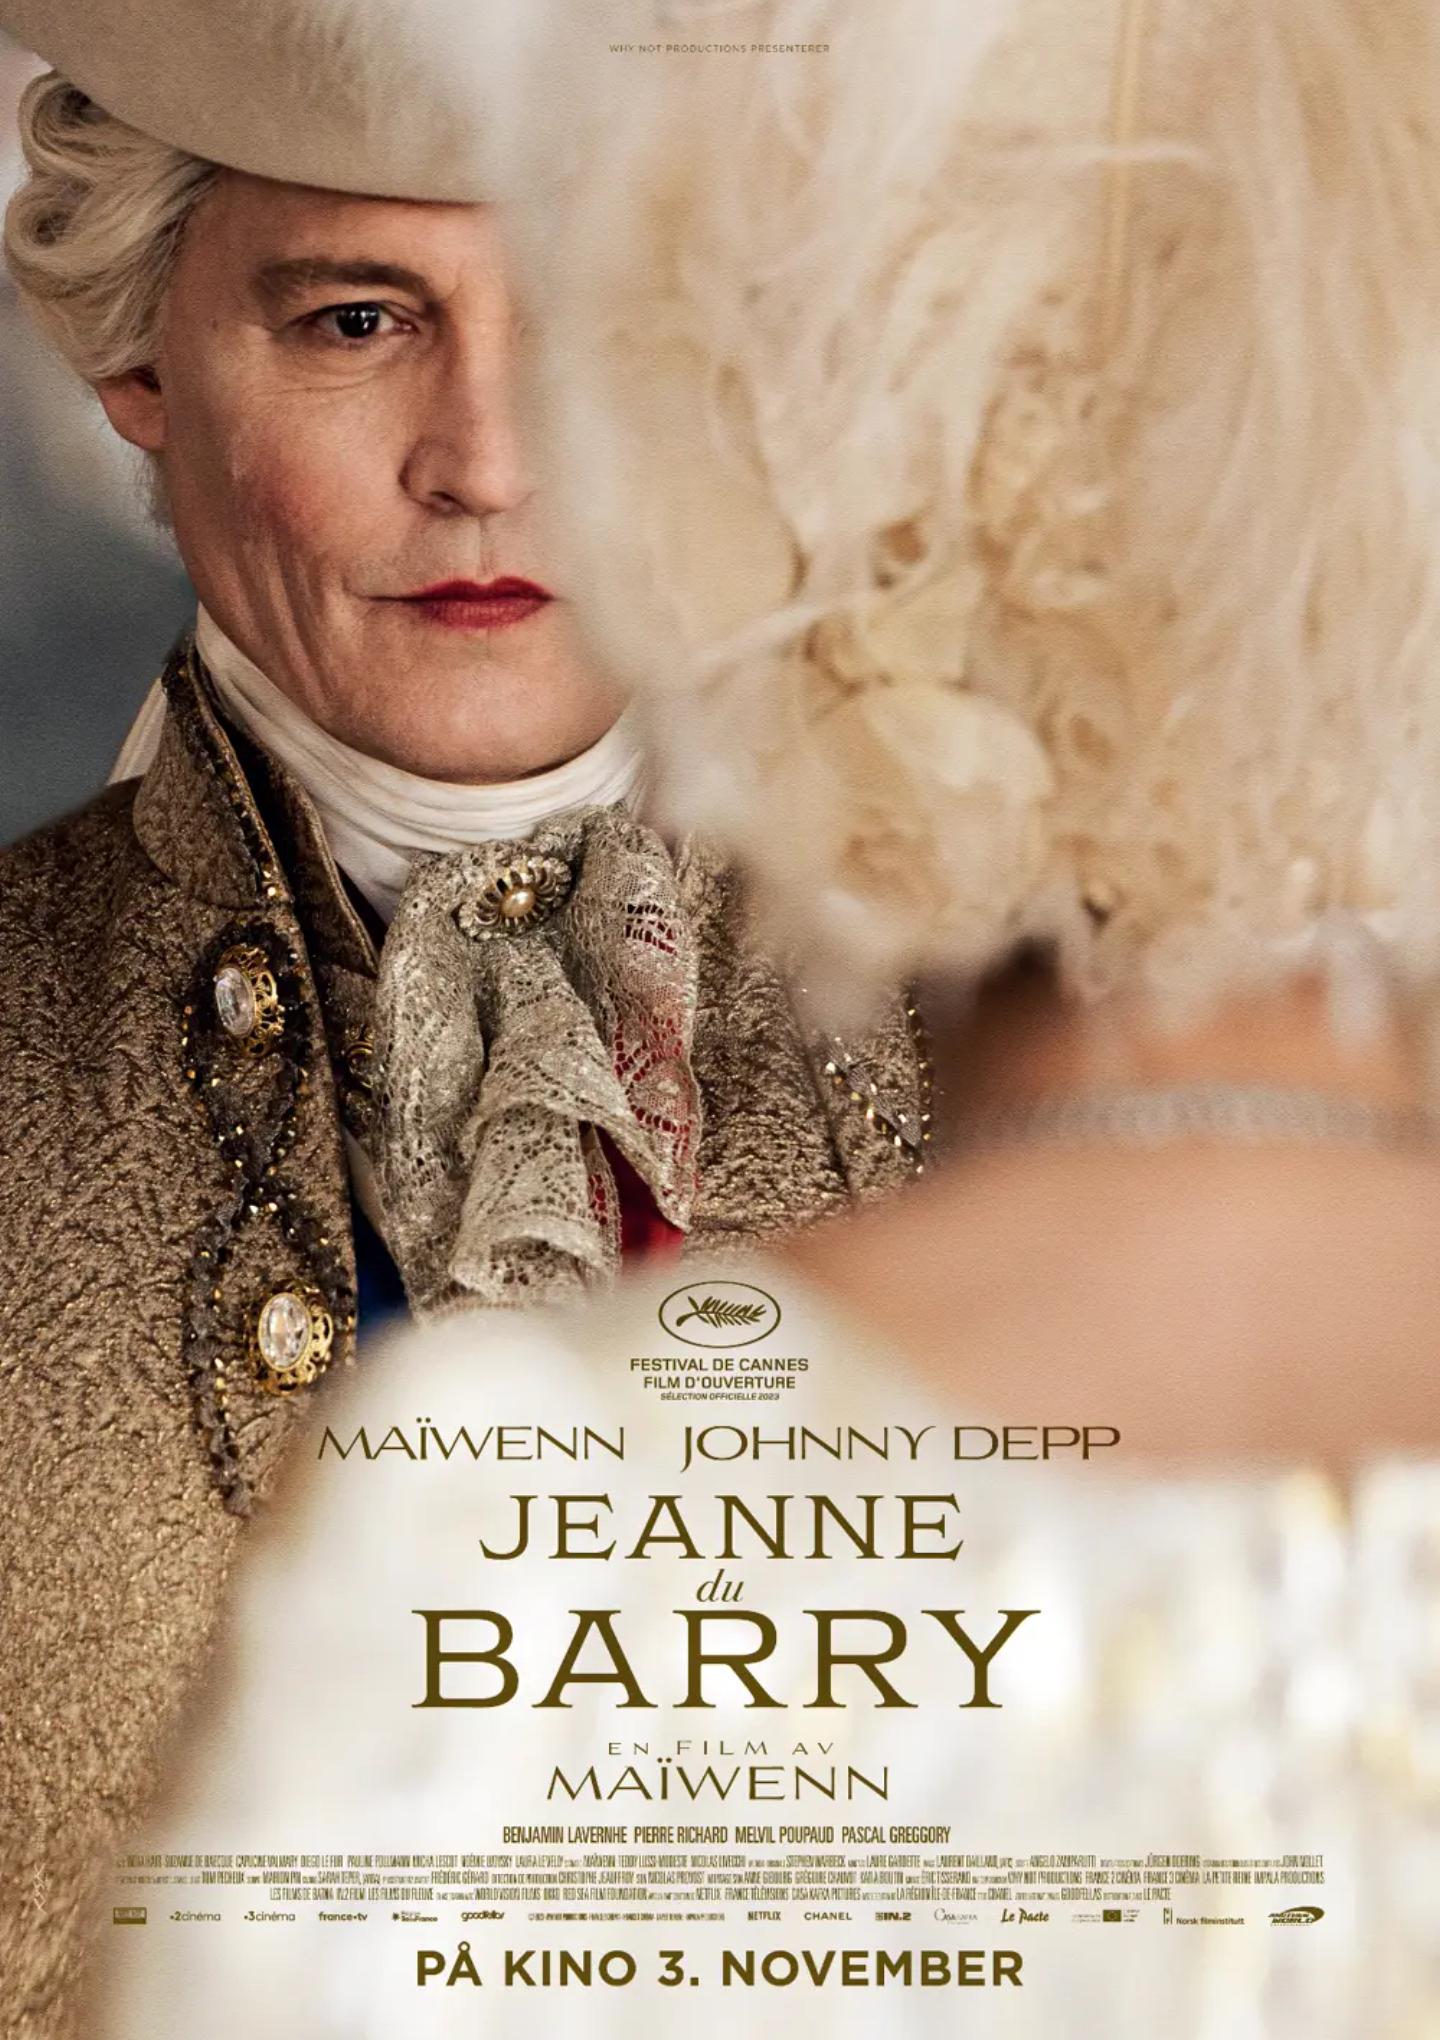 Plakat for 'Jeanne du Barry'